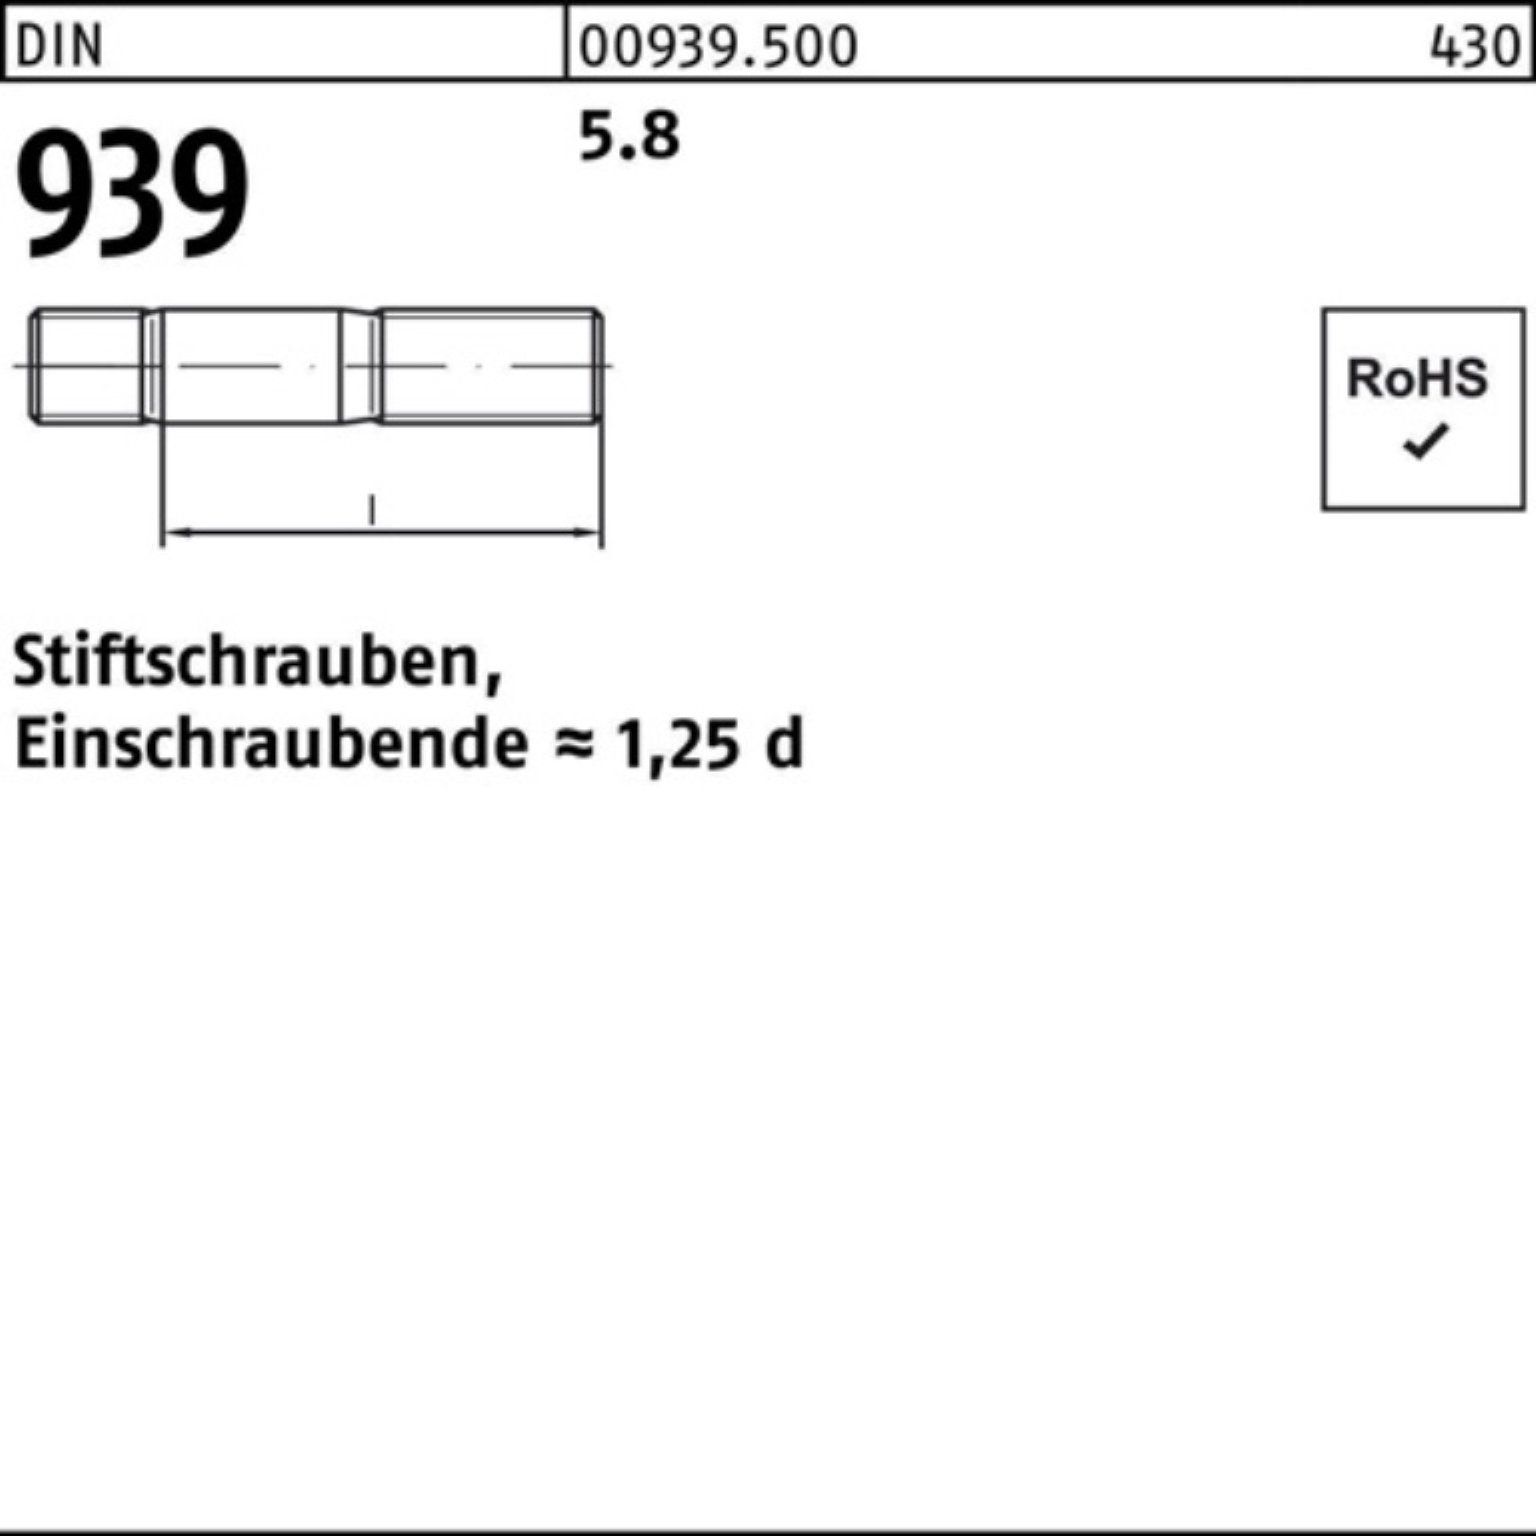 Stiftschraube Reyher M10x 70 100er Pack 939 Stiftschraube S DIN 5.8 50 Einschraubende=1,25d